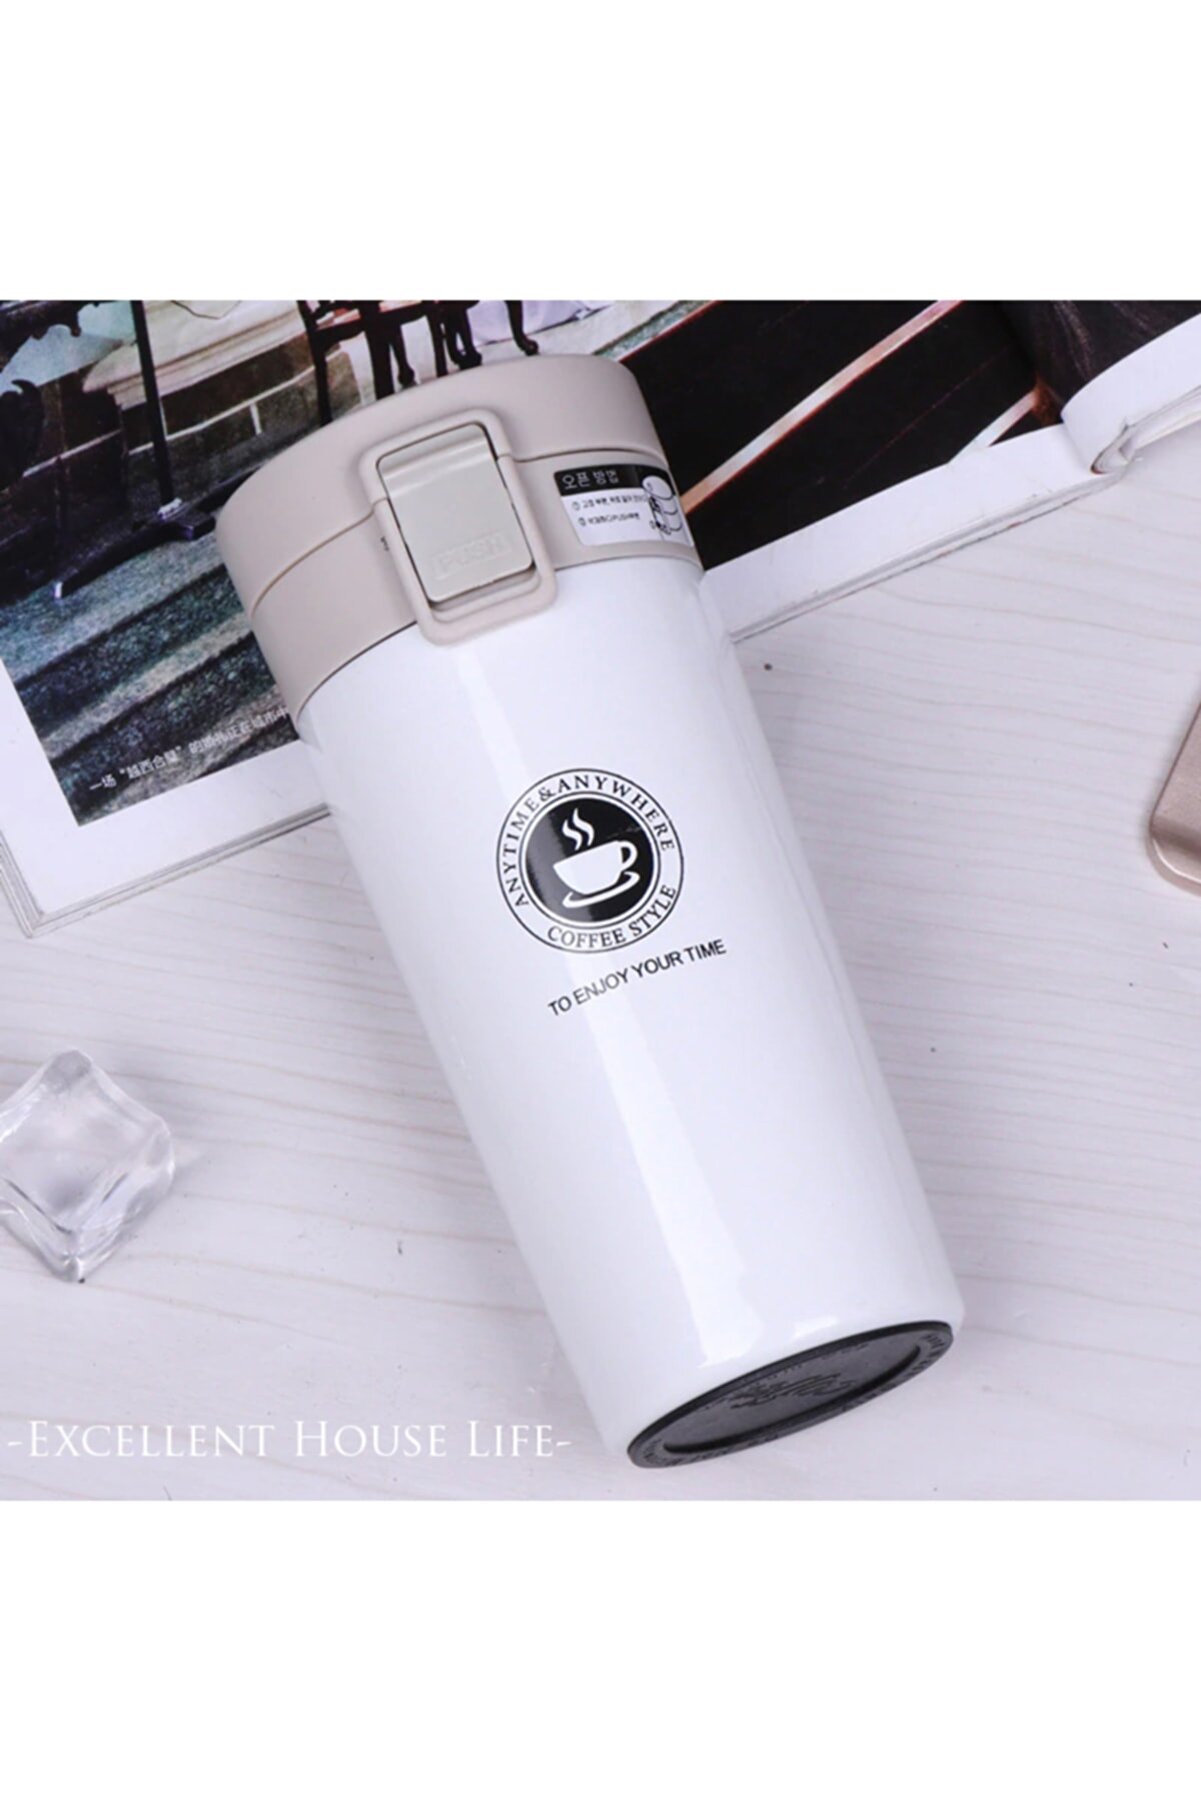 Excellent House Life Kilitli Çift Katmanlı Paslanmaz Çelik 380ml Termos Bardak Mug Araç Kahve Çay El Termosu Beyaz+filtre